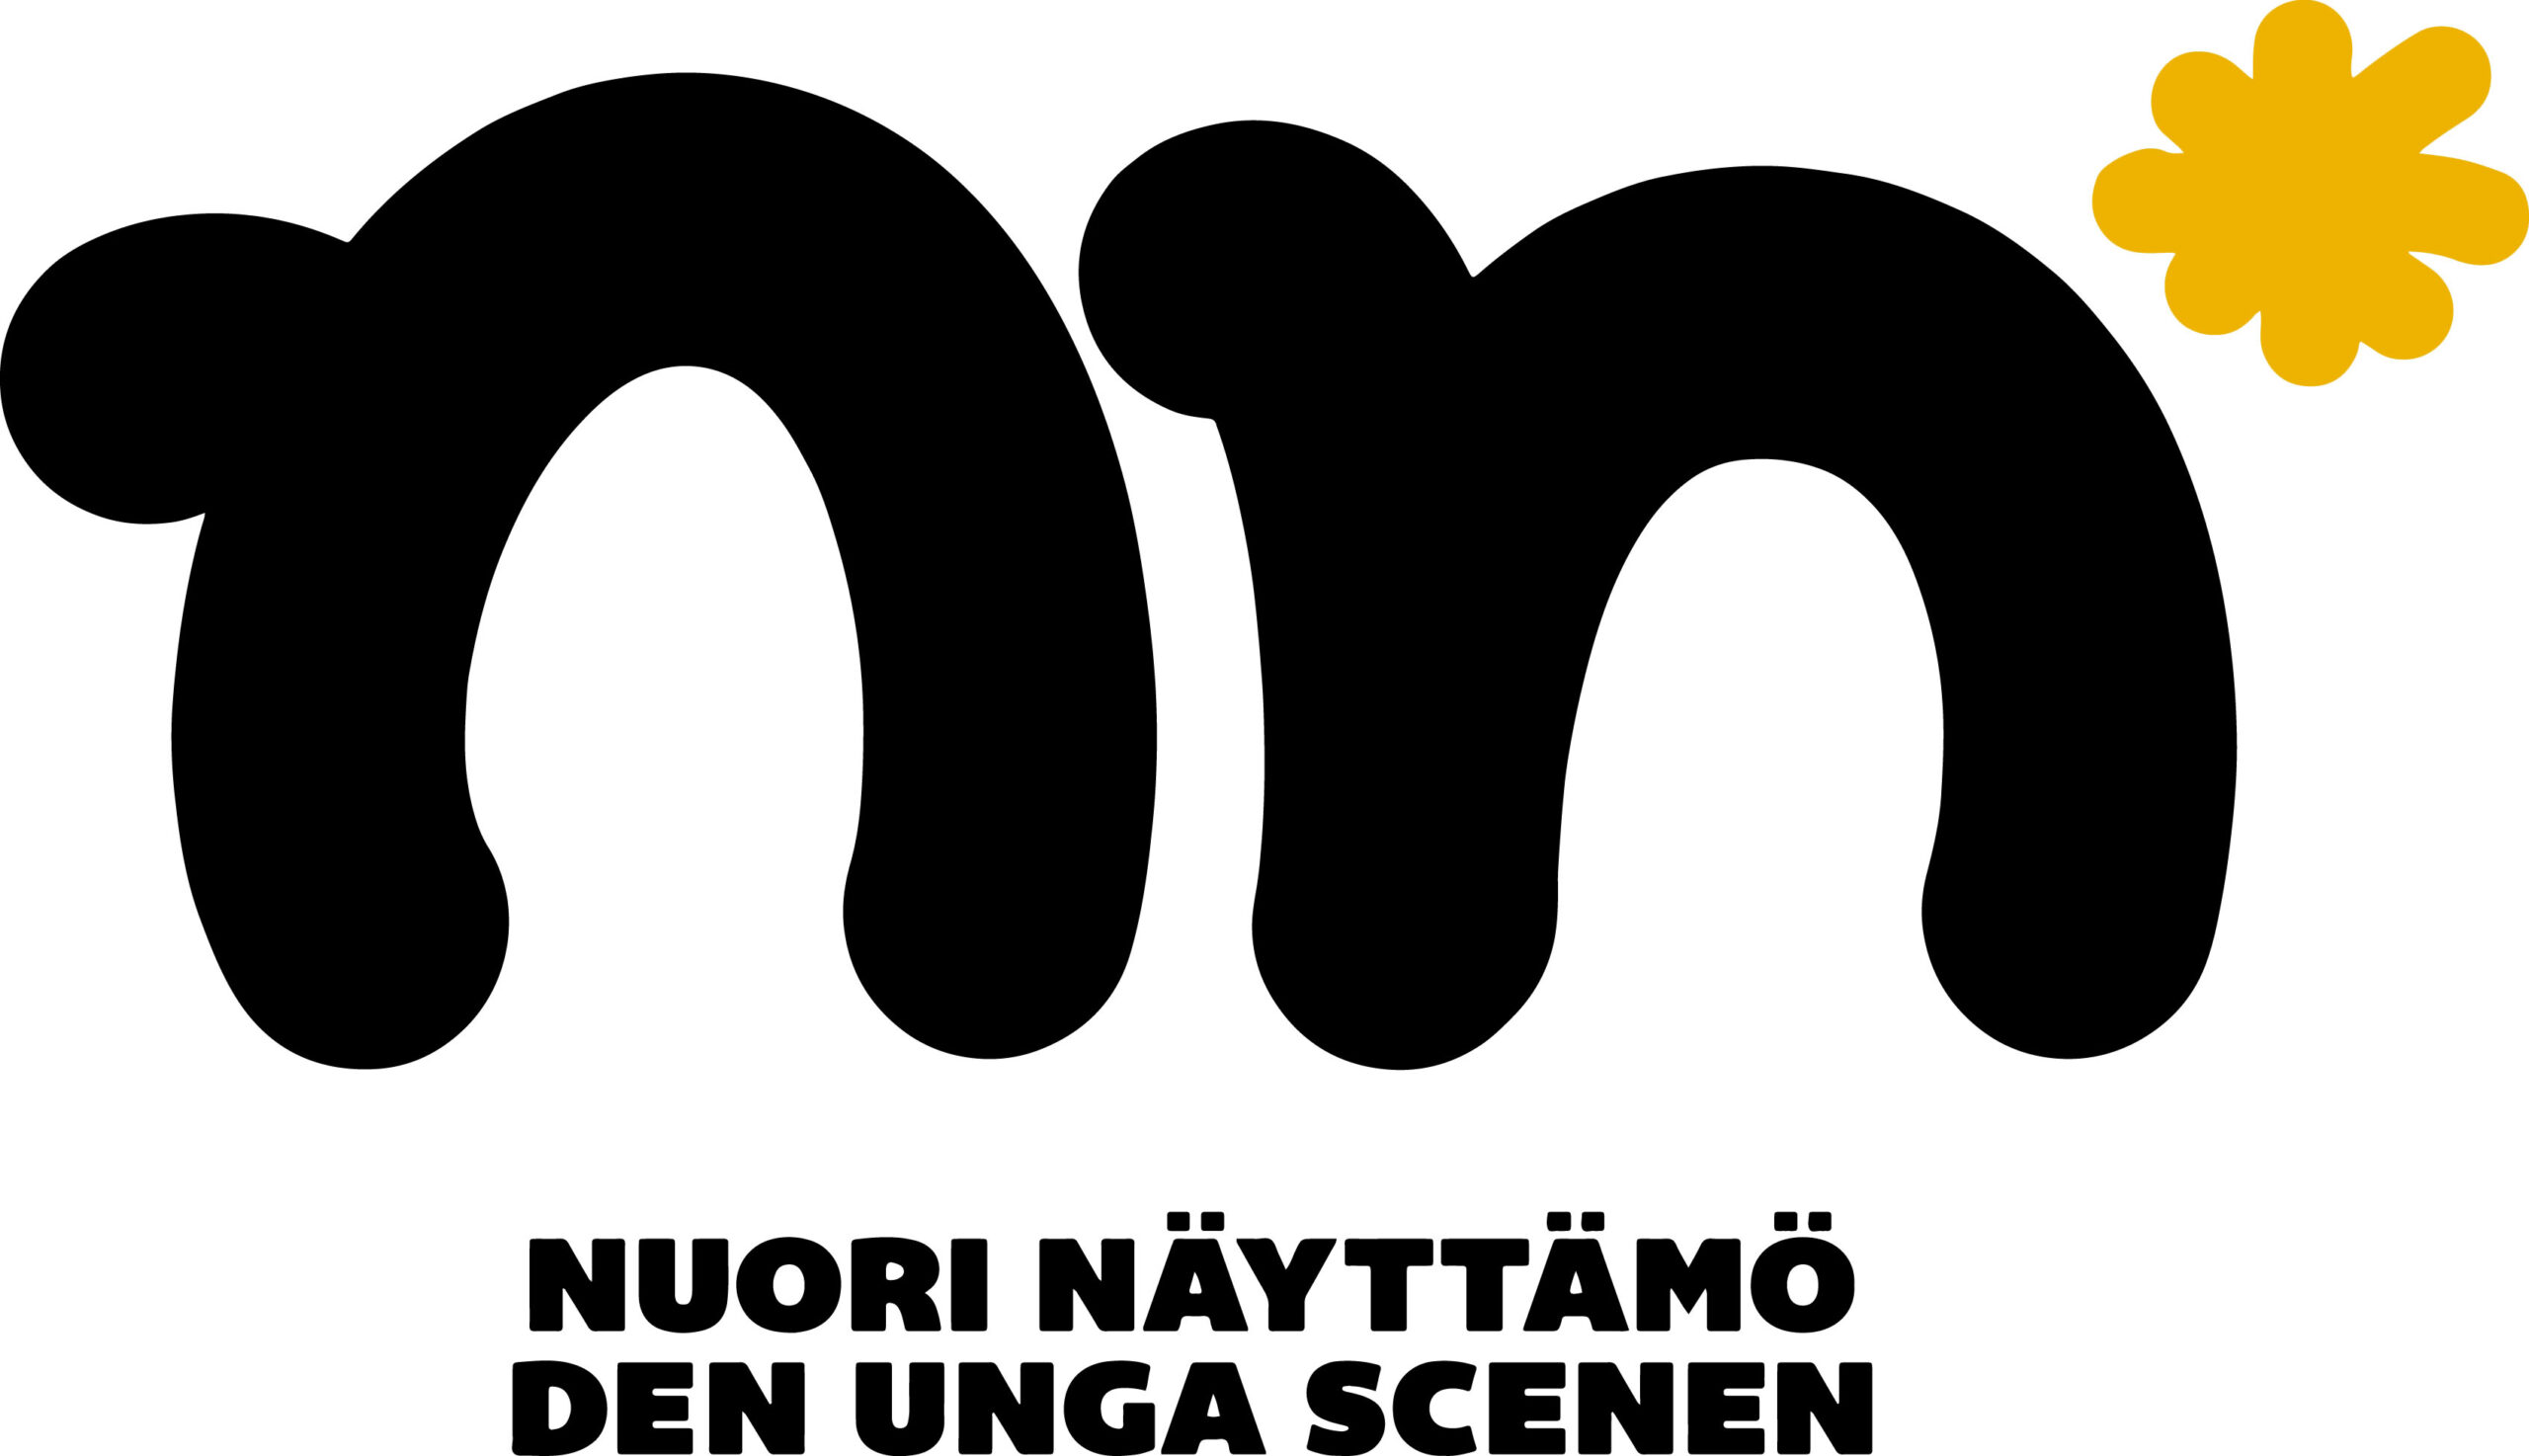 Nuoren näyttämön NN-logo